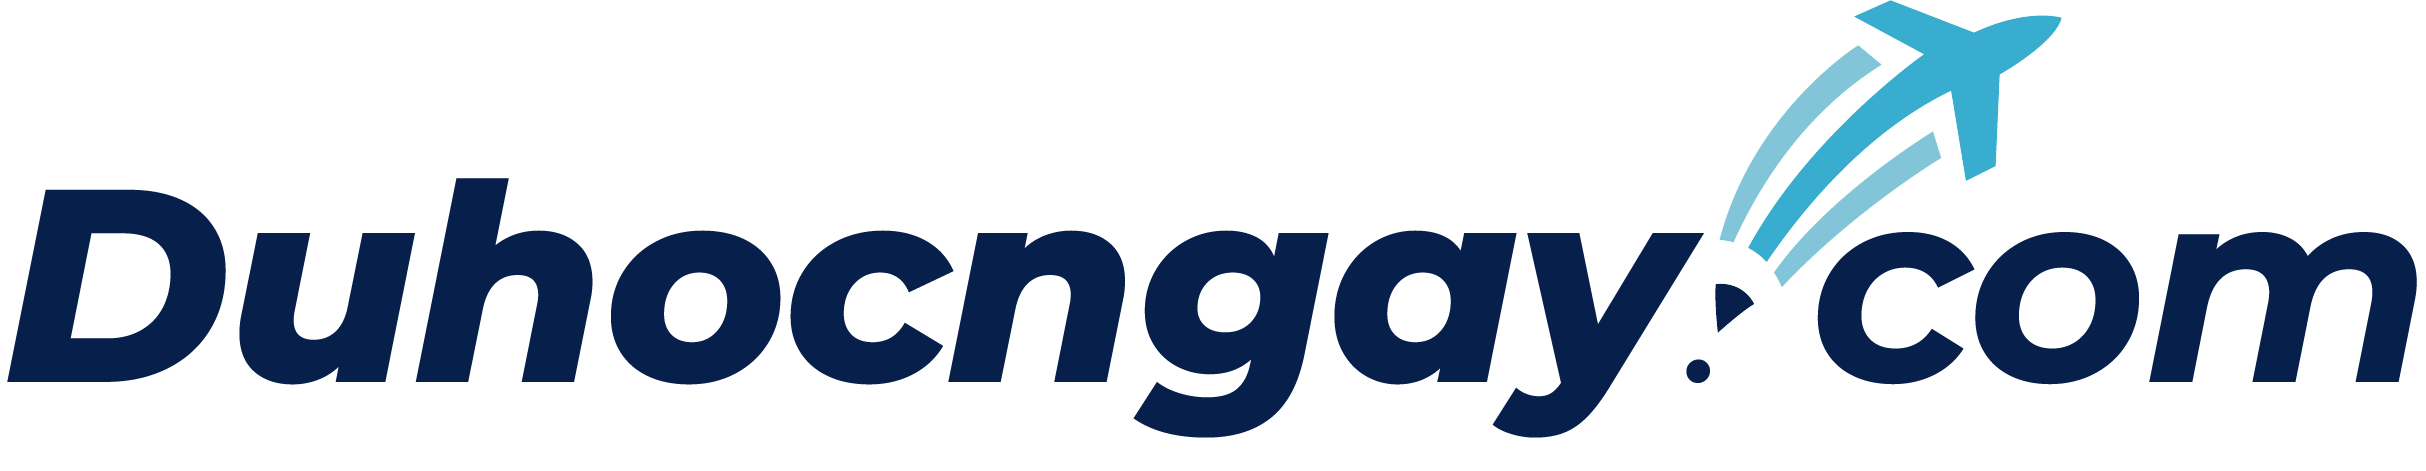 Logo Duhocngay